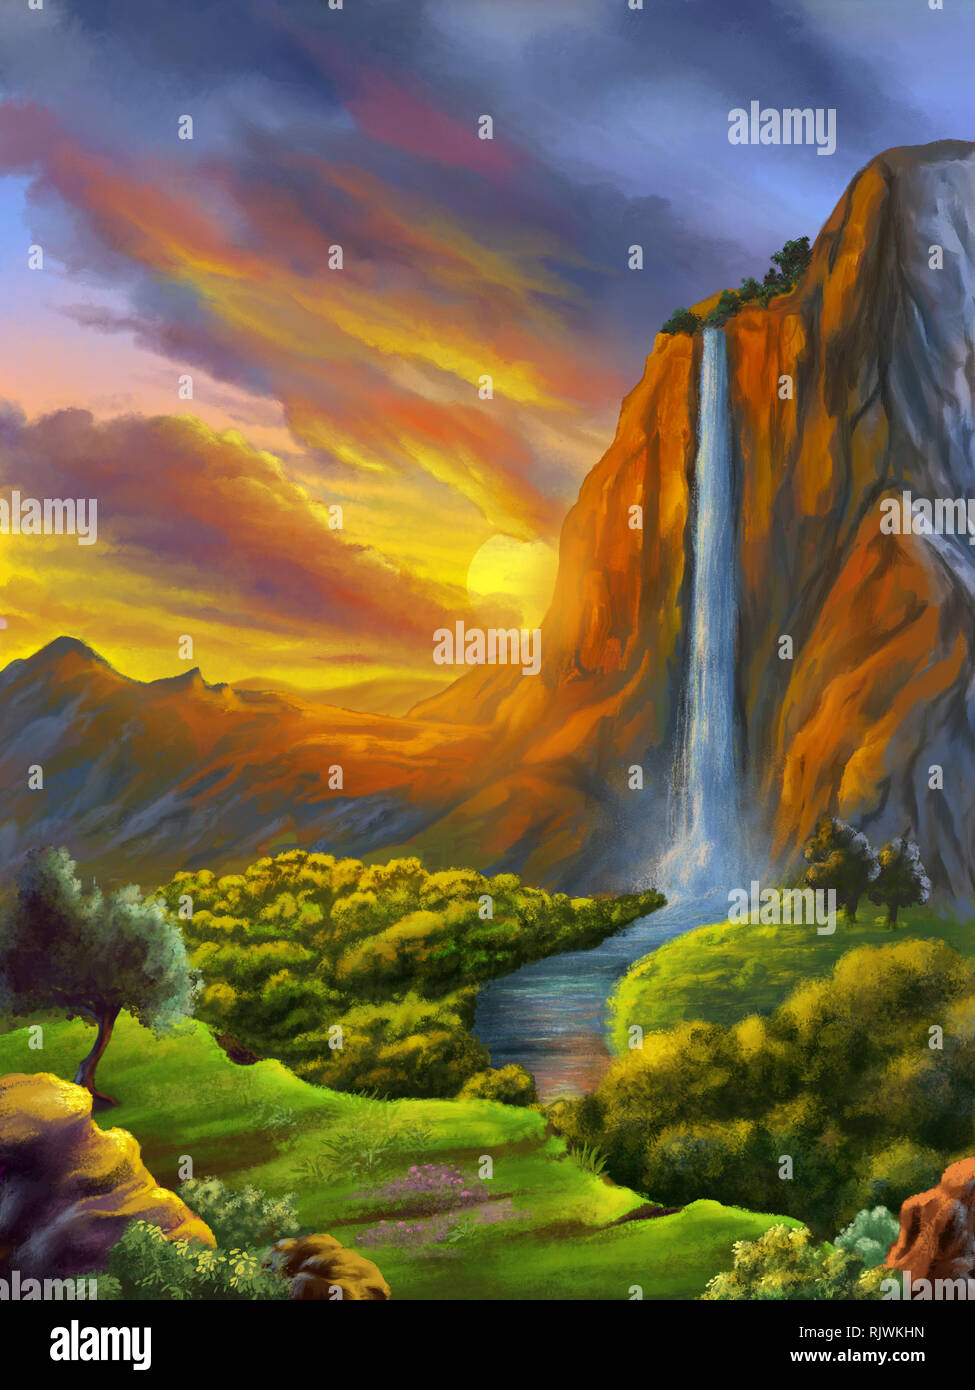 Imaginaire Paysage avec chute d'eau au coucher du soleil. Peinture numérique. Banque D'Images